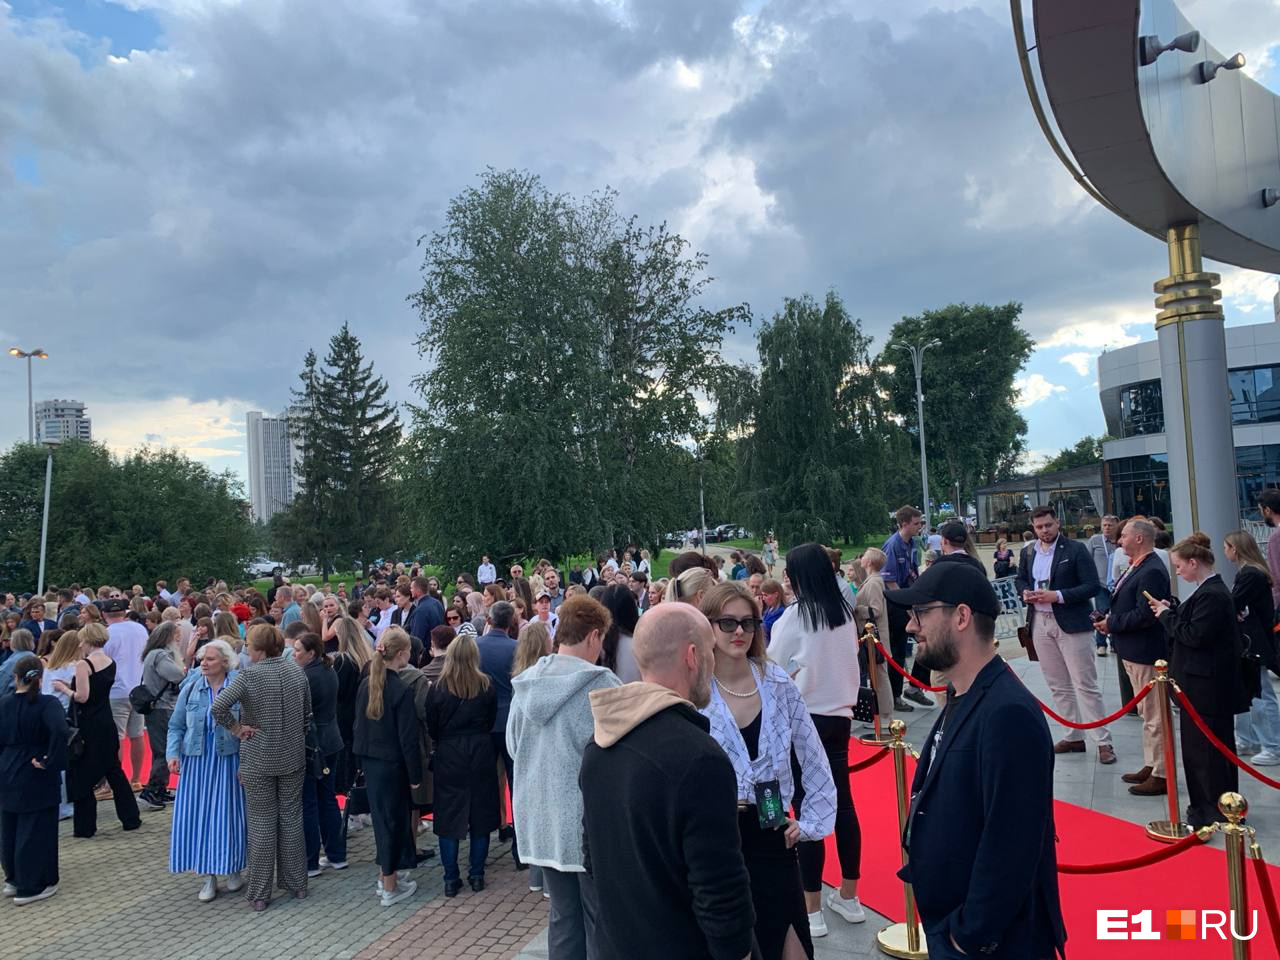 В центре Екатеринбурга появилась красная дорожка и скопилась огромная толпа. Что происходит?